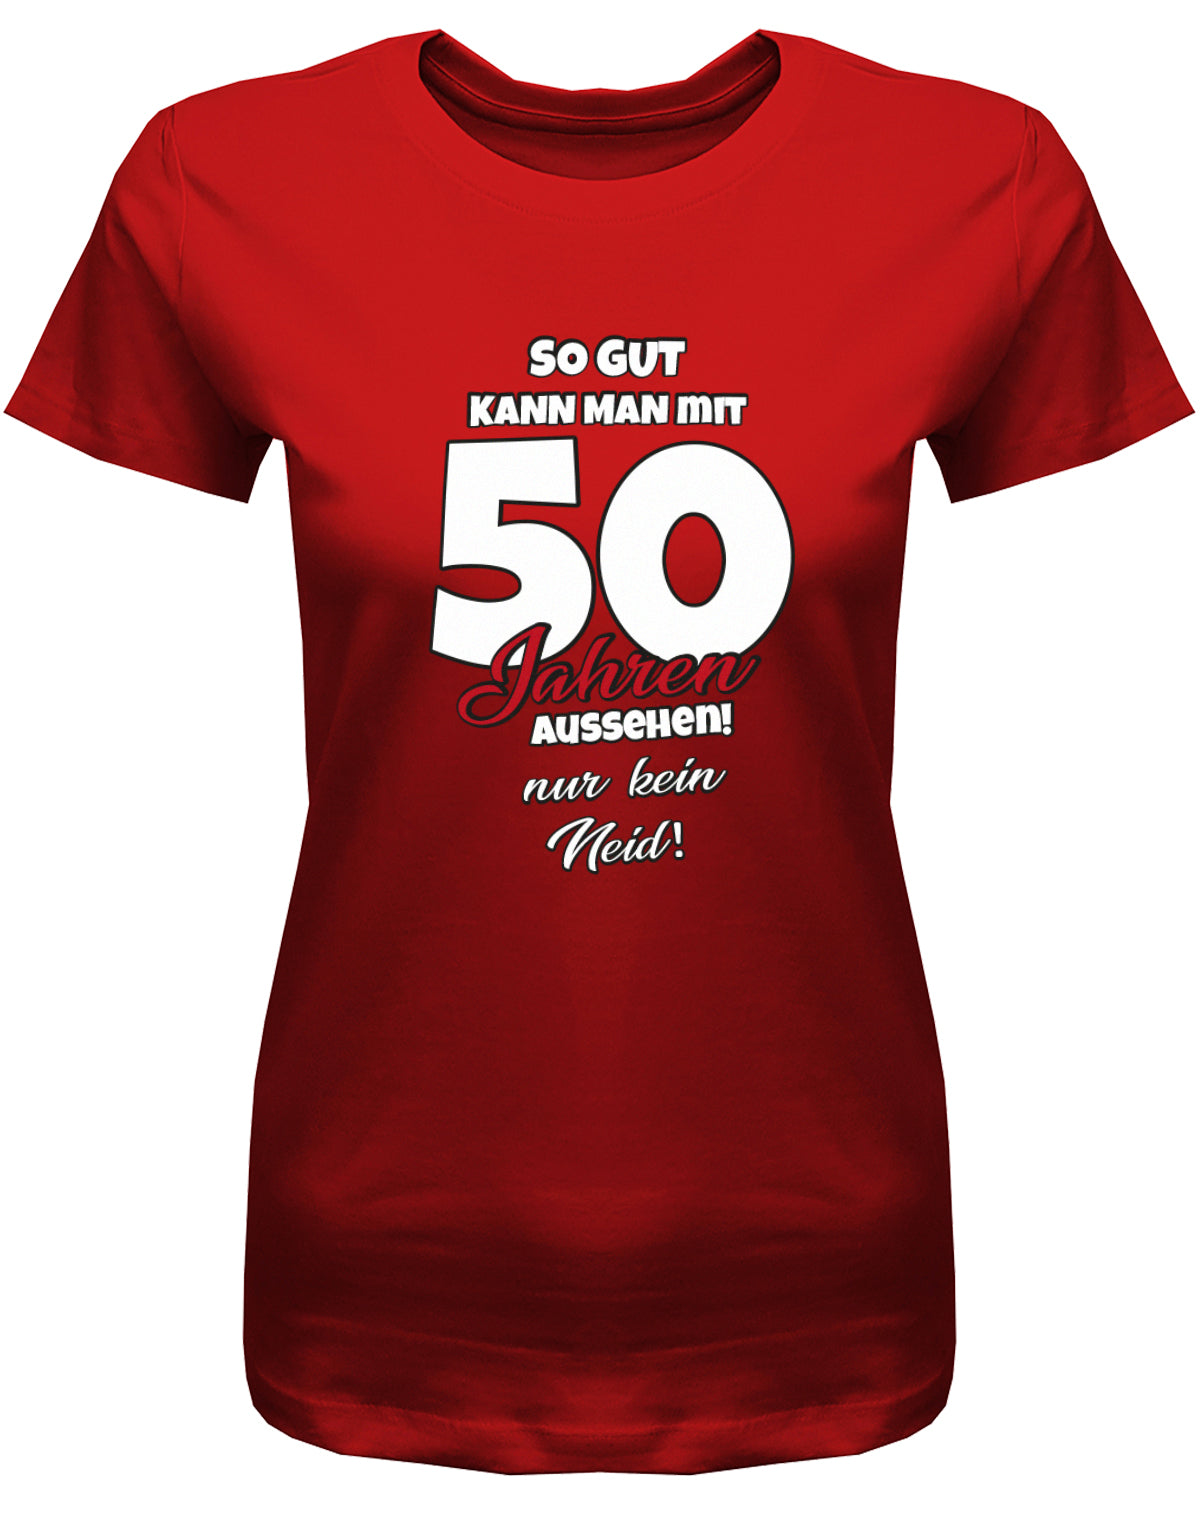 Lustiges T-Shirt zum 50 Geburtstag für die Frau Bedruckt mit So gut kann man mit 50 Jahren aussehen! Nur kein Neid! Rot